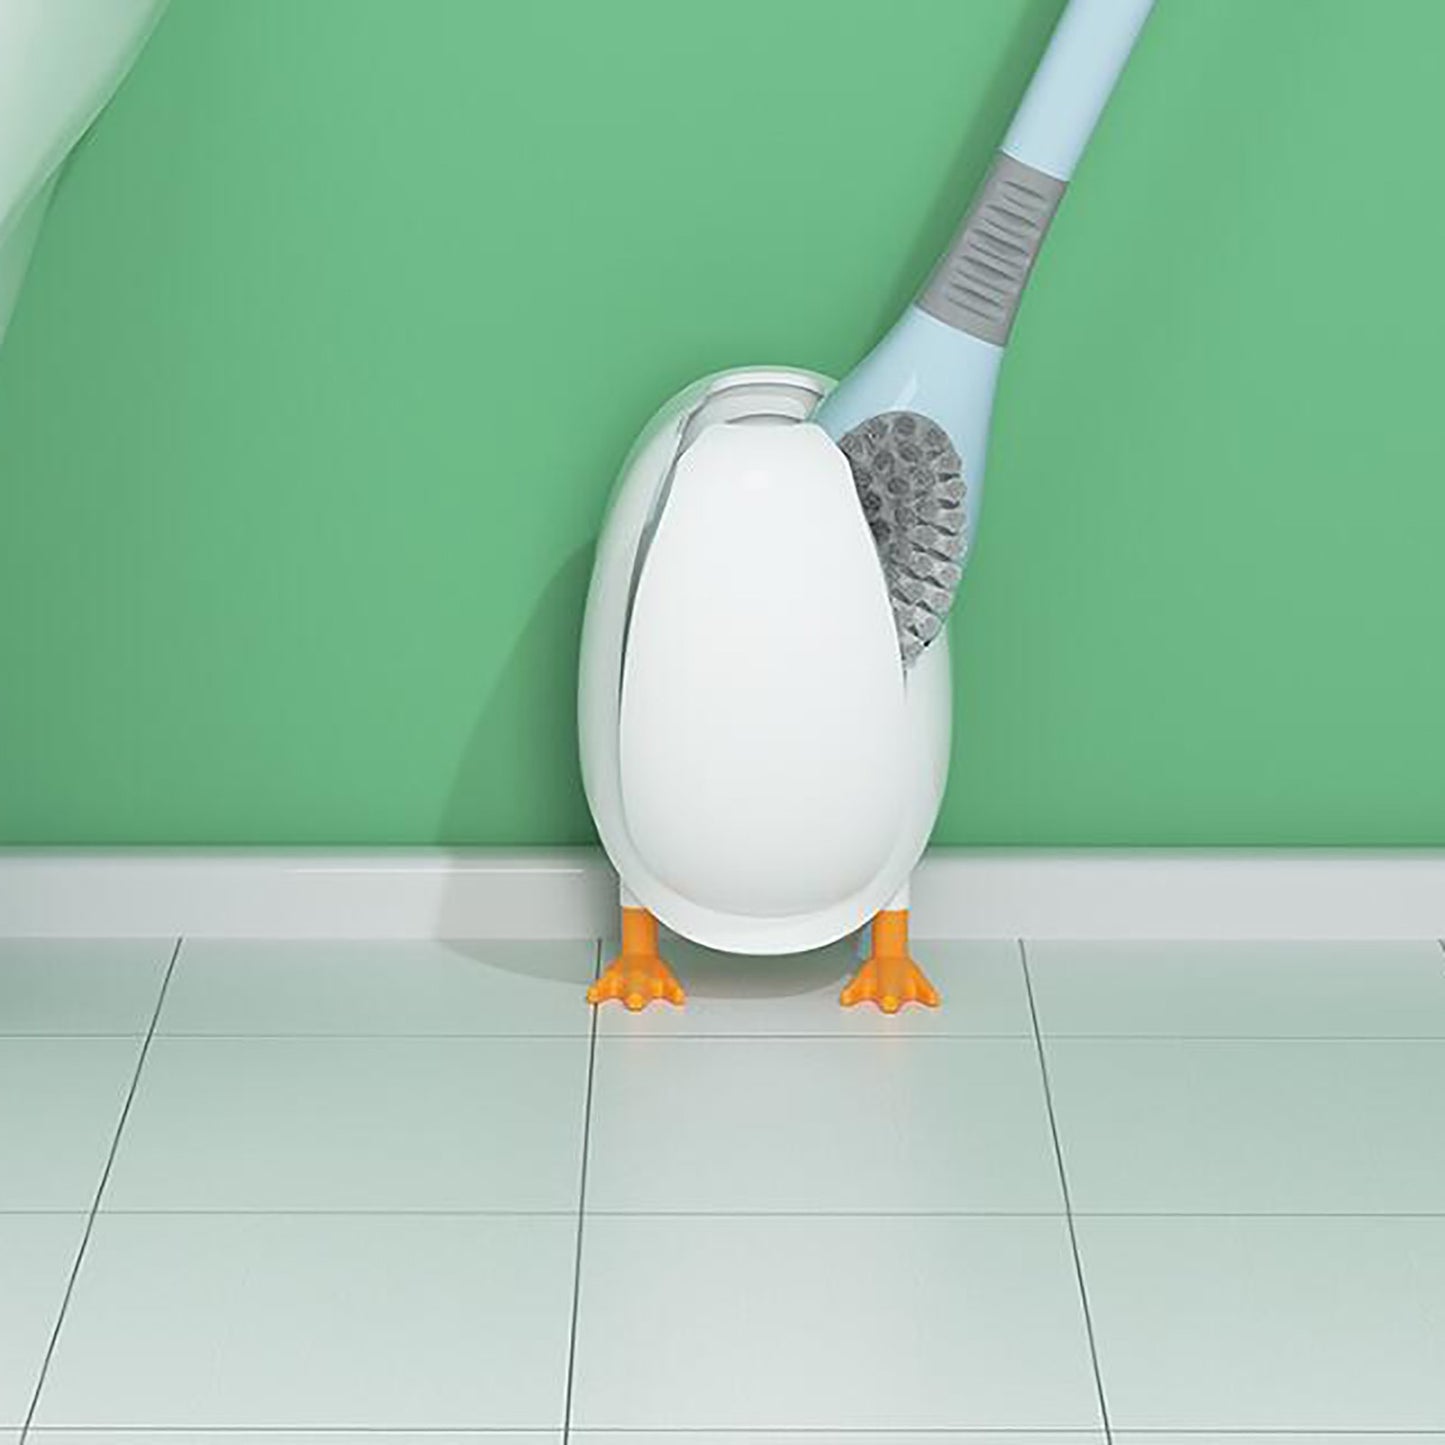 Ducky Toilet Brush Cleaner